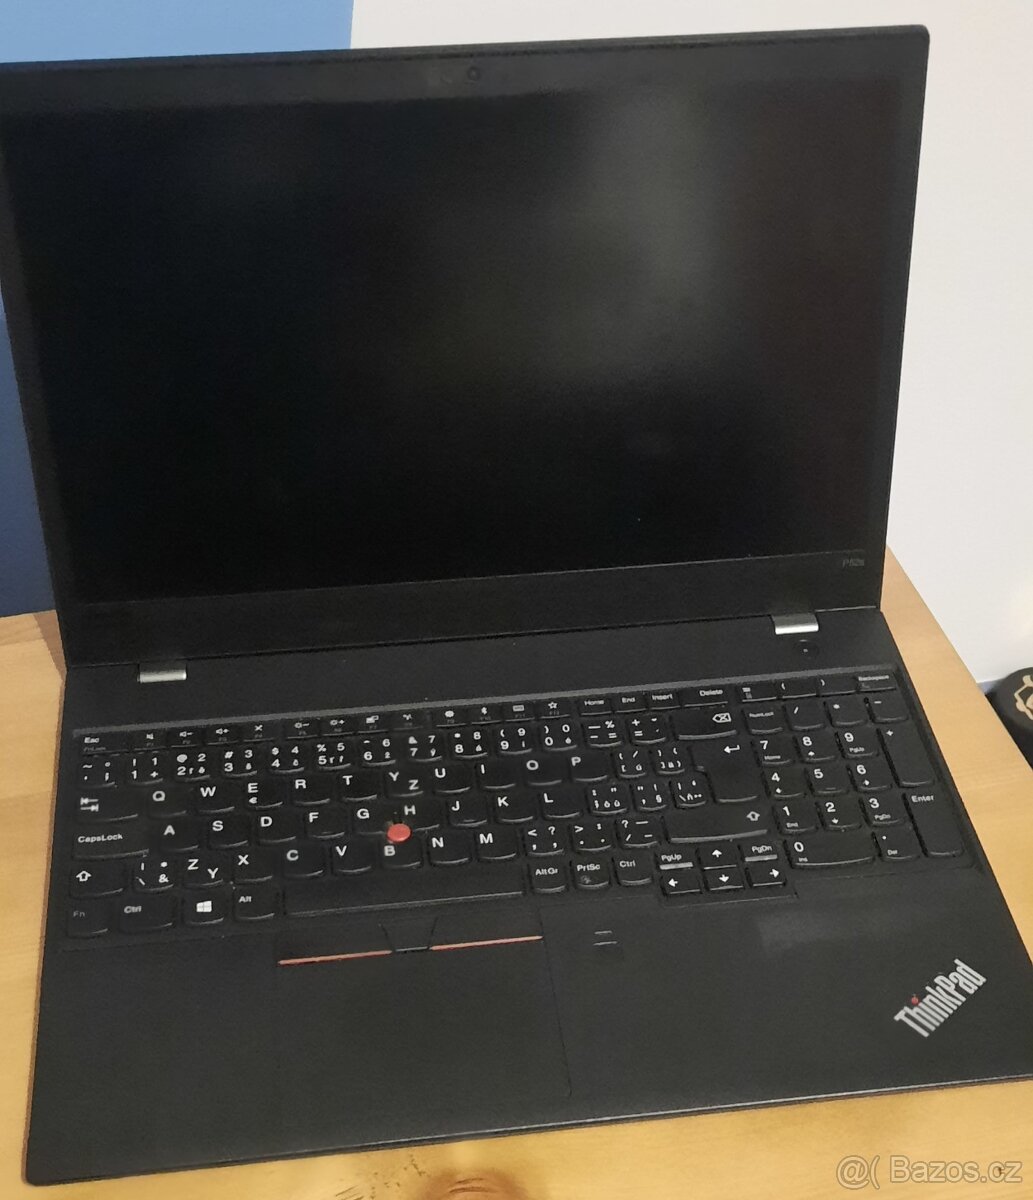 Notebook Lenovo ThinkPad P52s